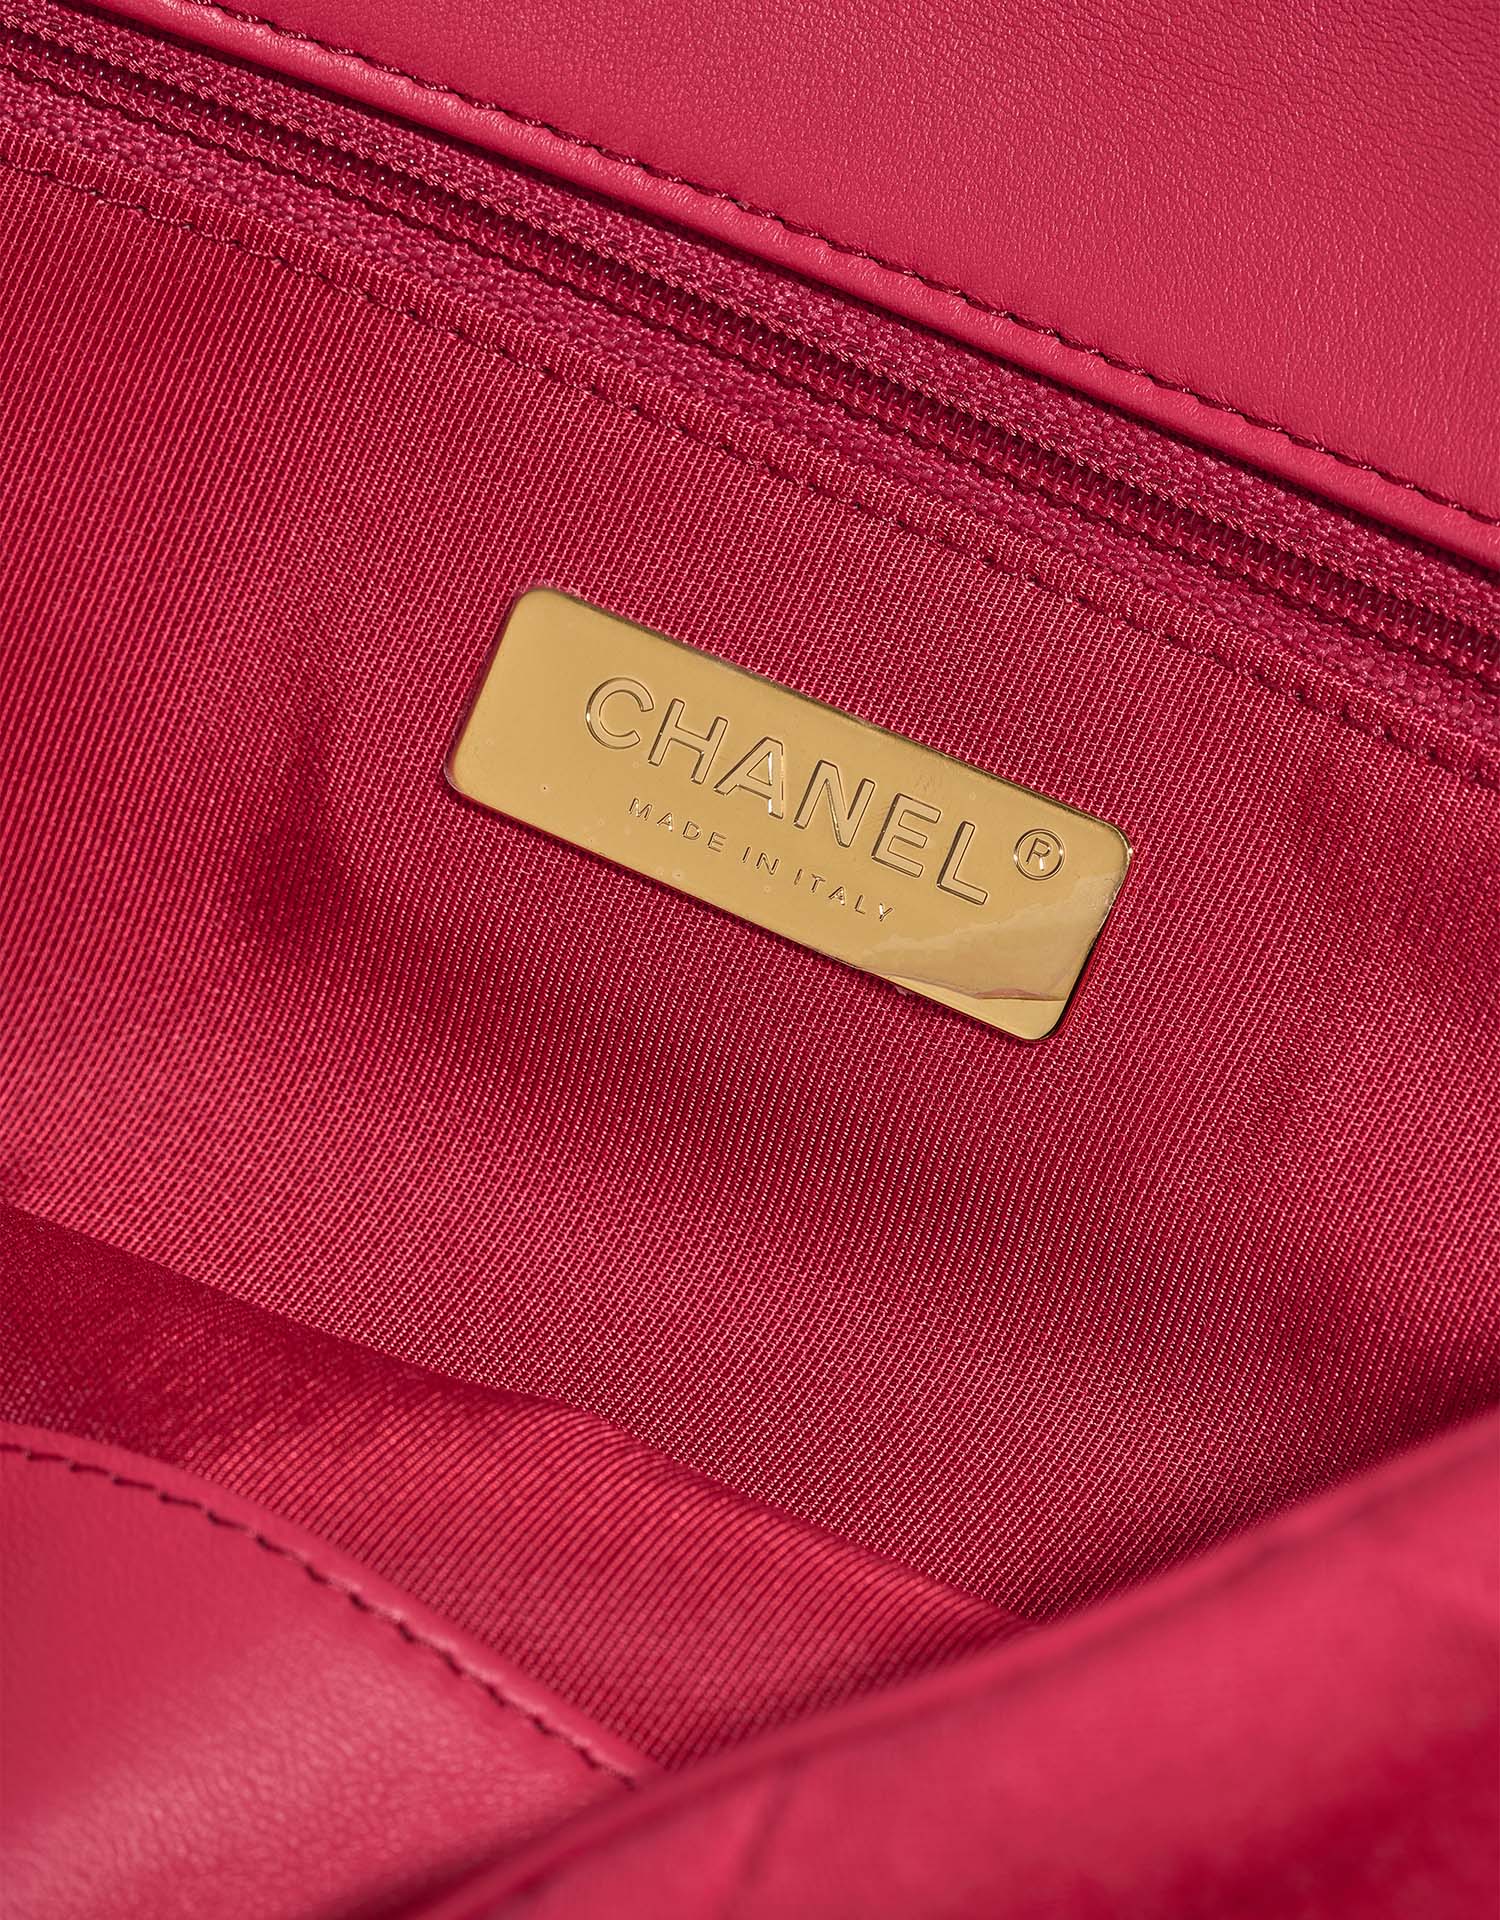 Chanel 19 MaxiFlapBag HotPink Logo | Verkaufen Sie Ihre Designer-Tasche auf Saclab.com